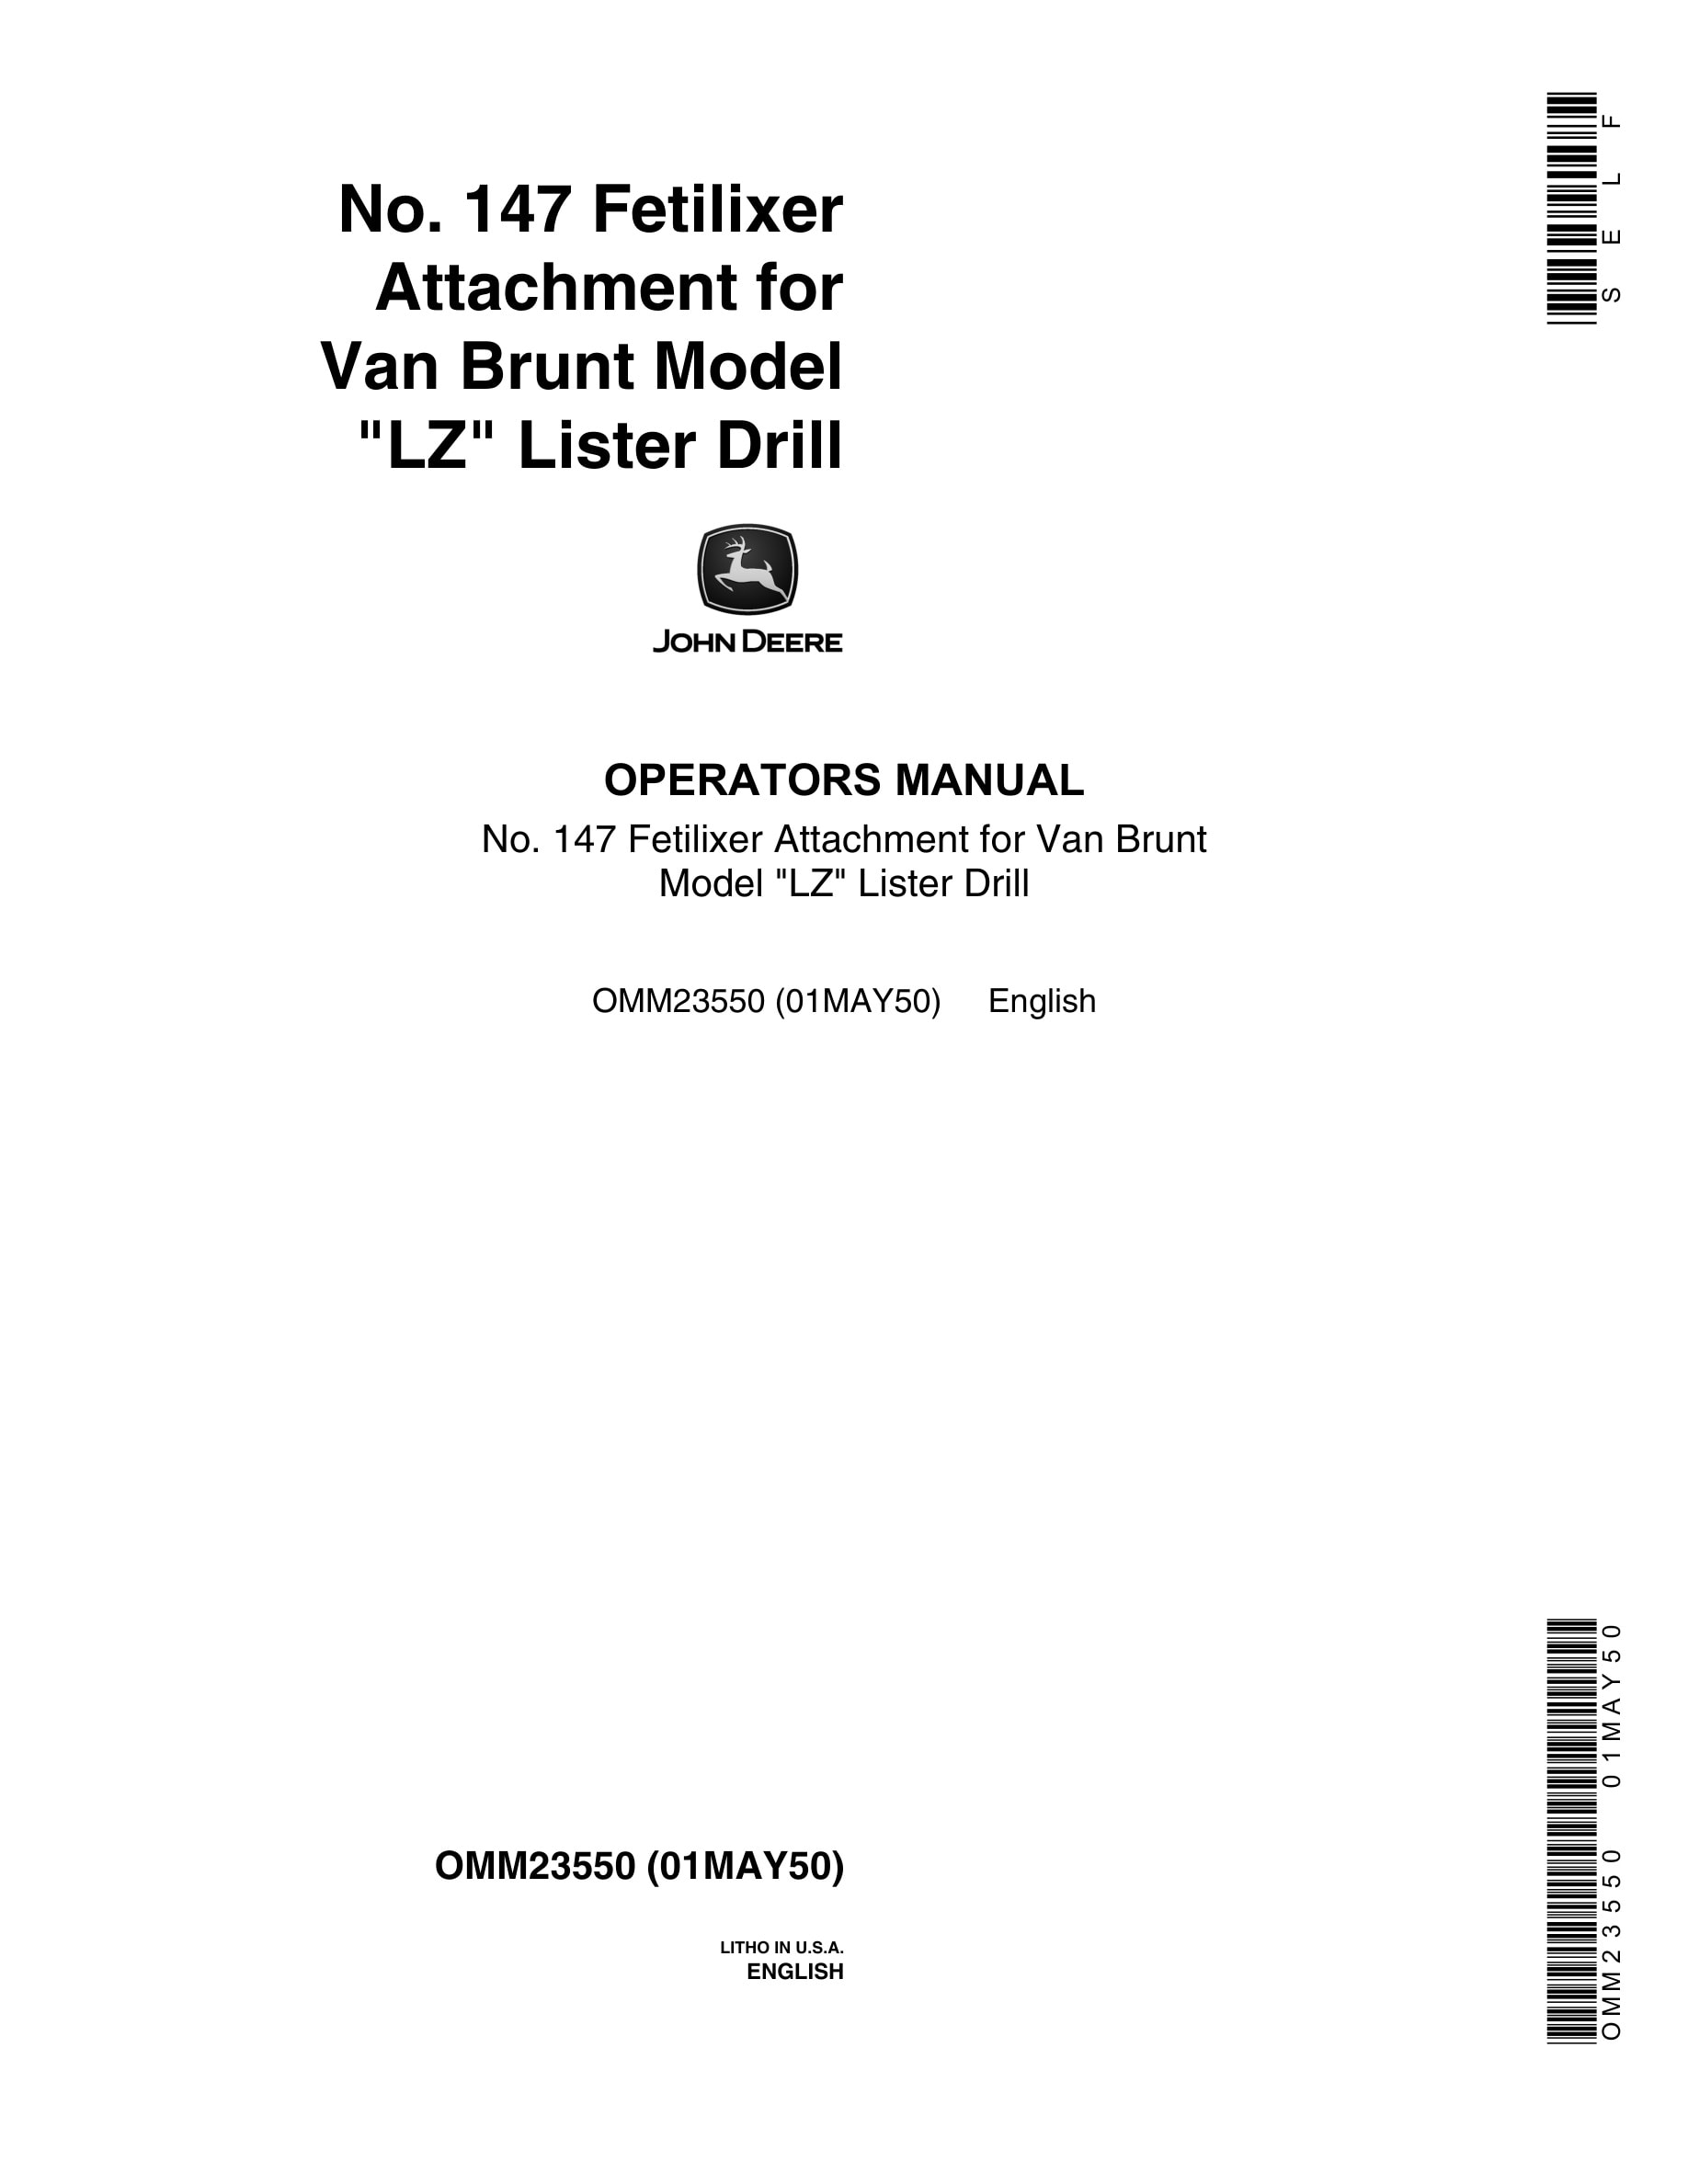 John Deere No. 147 Fetilixer Attachment for Van Brunt Model LZ Lister Drill Operator Manual OMM23550-1